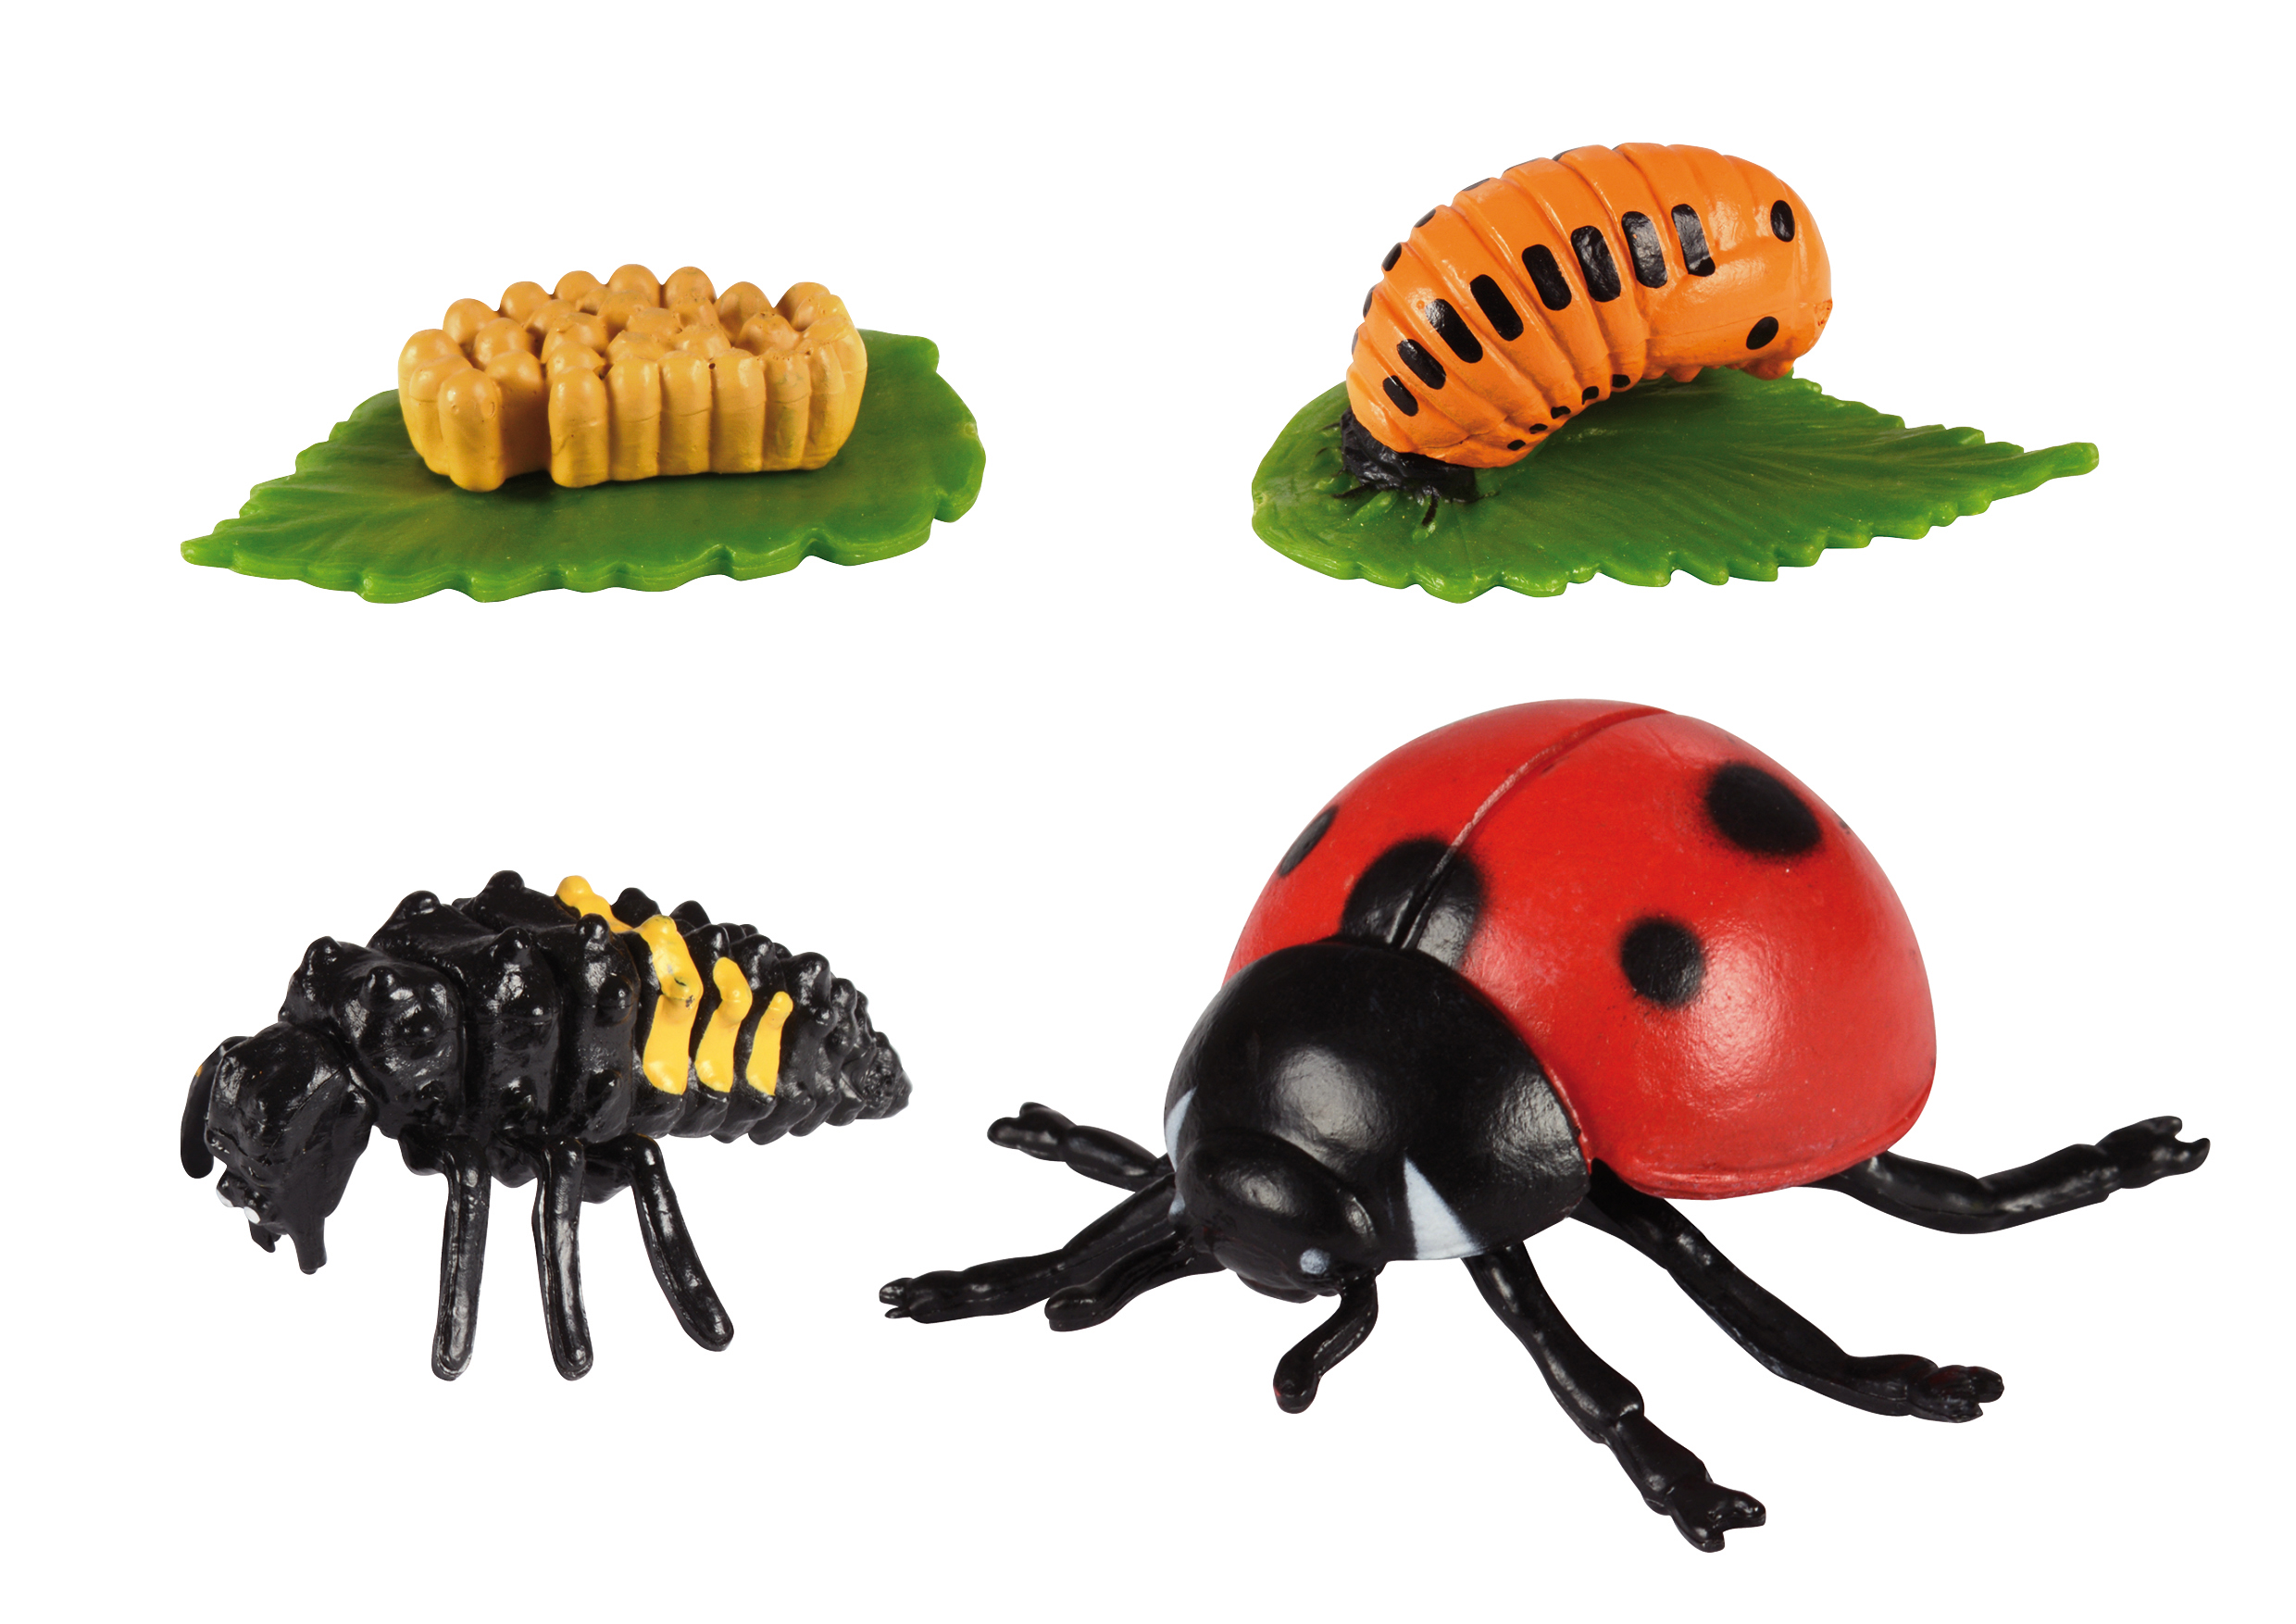  Insekten Entwicklungsstadium-Set (Schmetterling, Biene & Marienkäfer)